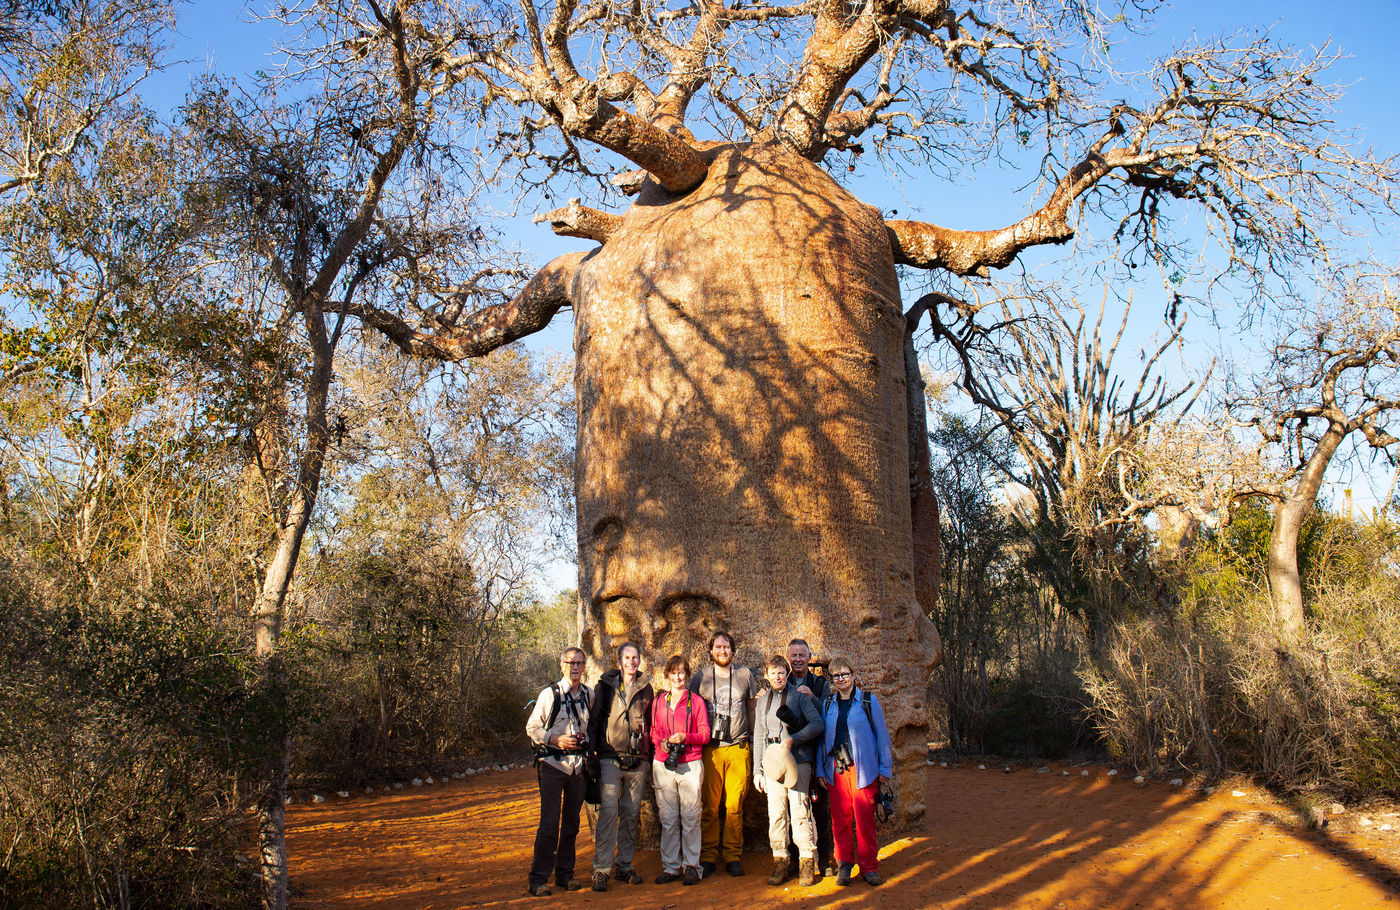 Deze baobab leende zich uitstekend voor een groepsfoto! © Samuel De Rycke